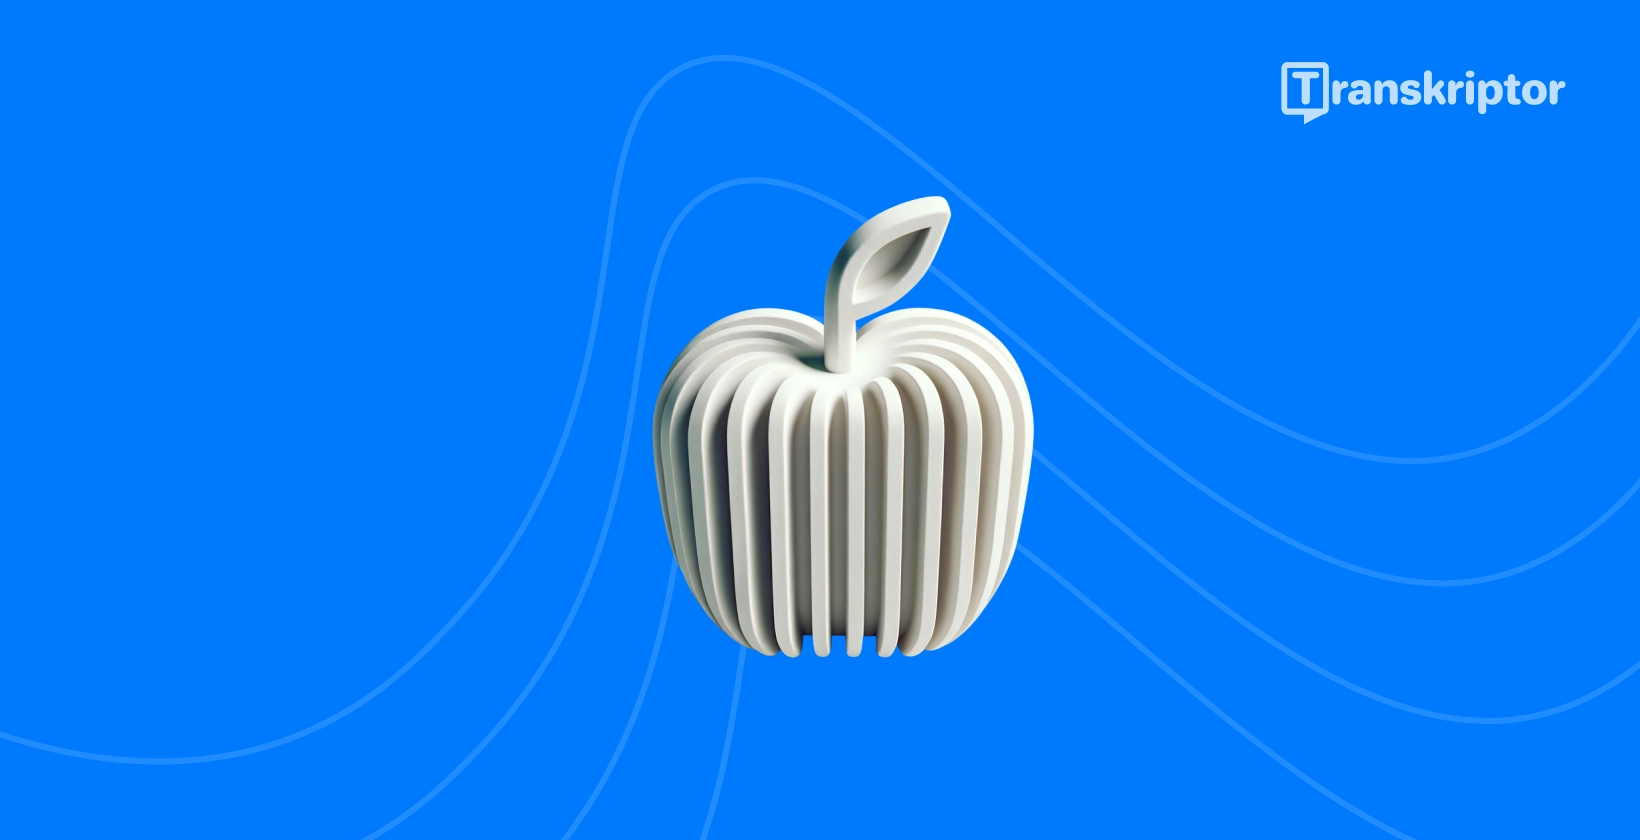 Stylizované jablko se zvukovými vlnami představuje nejlepší přepisovací aplikace dostupné pro iPhone uživatele.